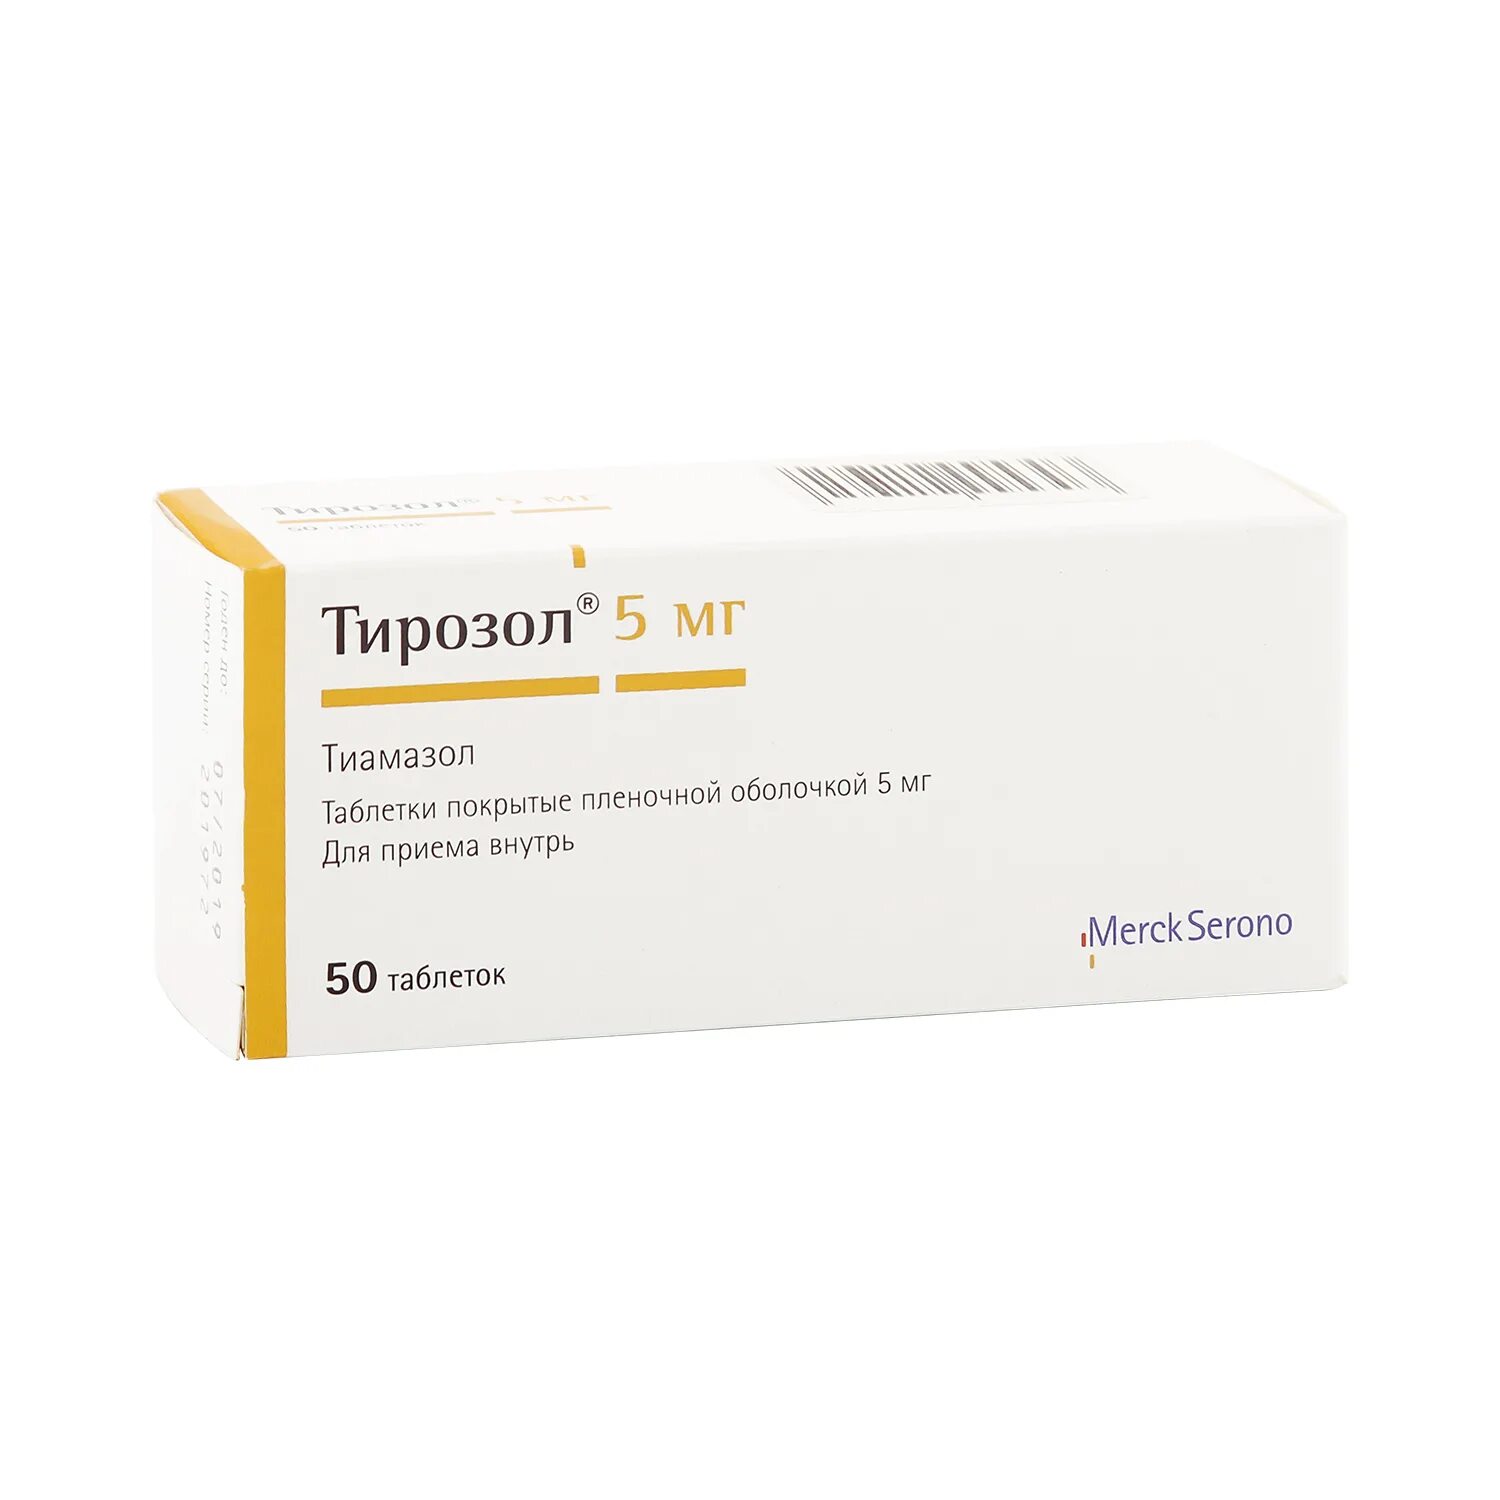 Тирозол 2.5 мг. Тирозол таб. П.П.О. 5мг №50. Тиамазол 30. Тирозол, тбл п/п/о 5мг №50.